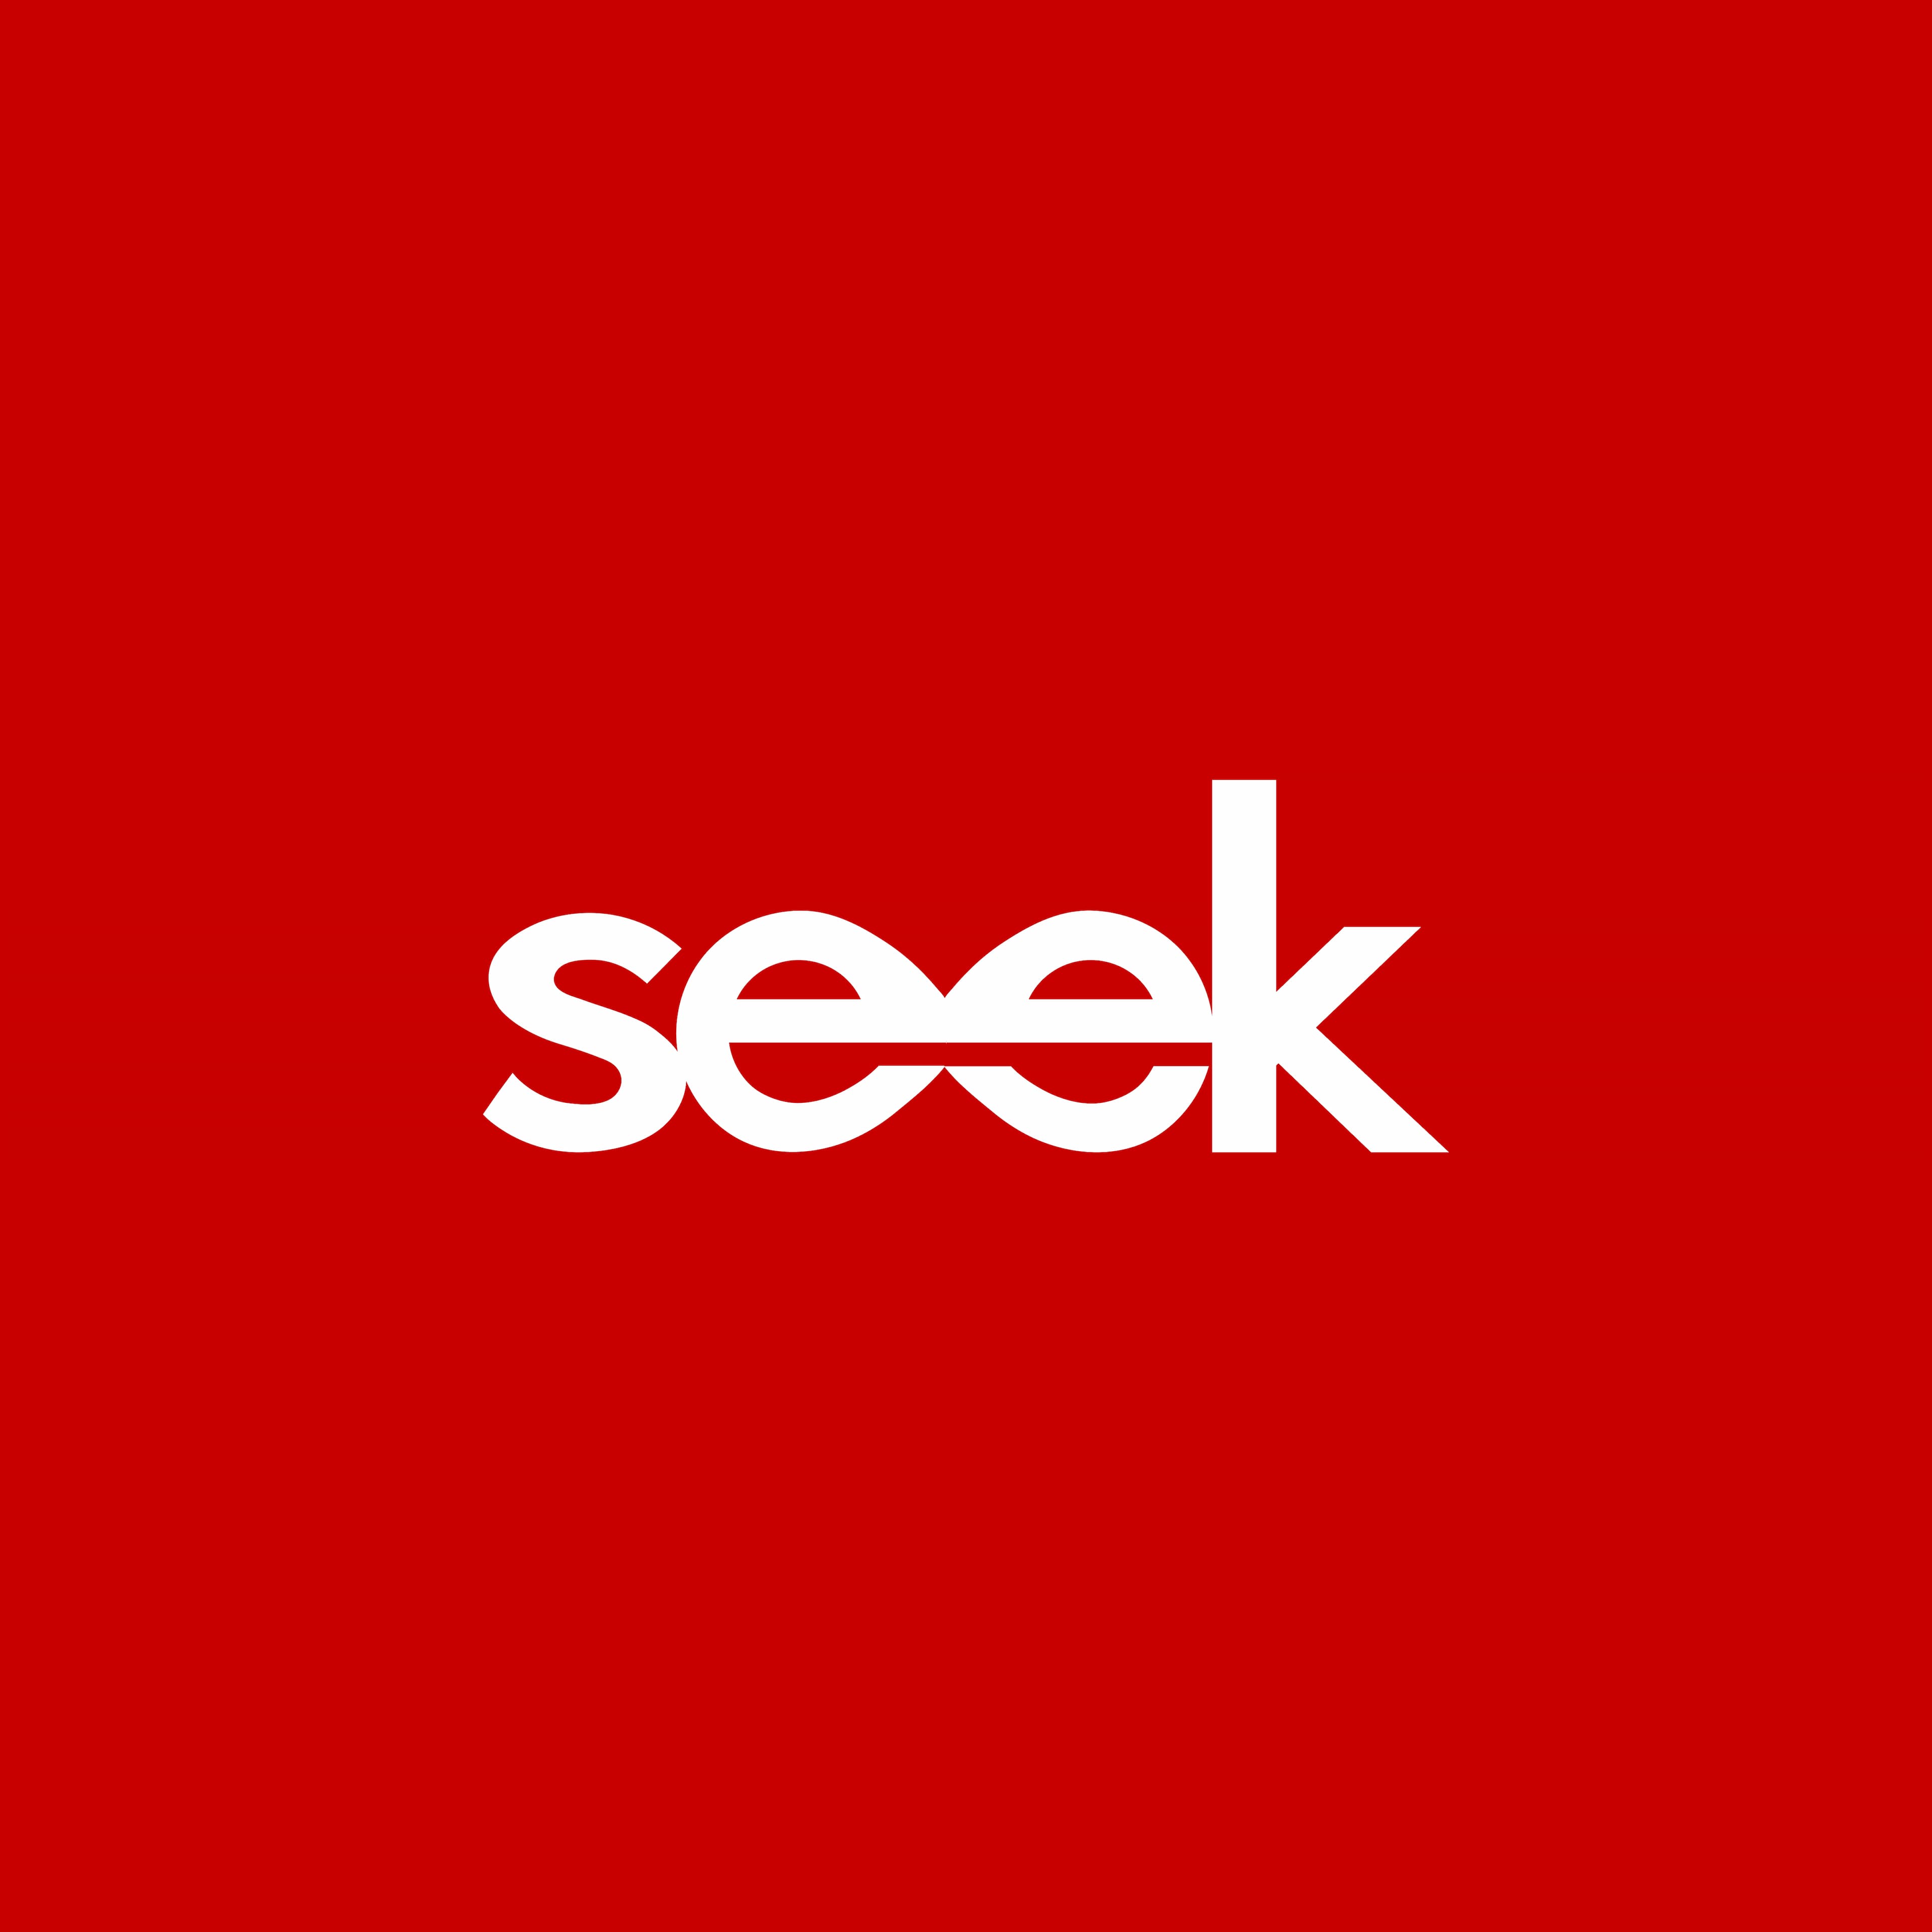 Seek's logo